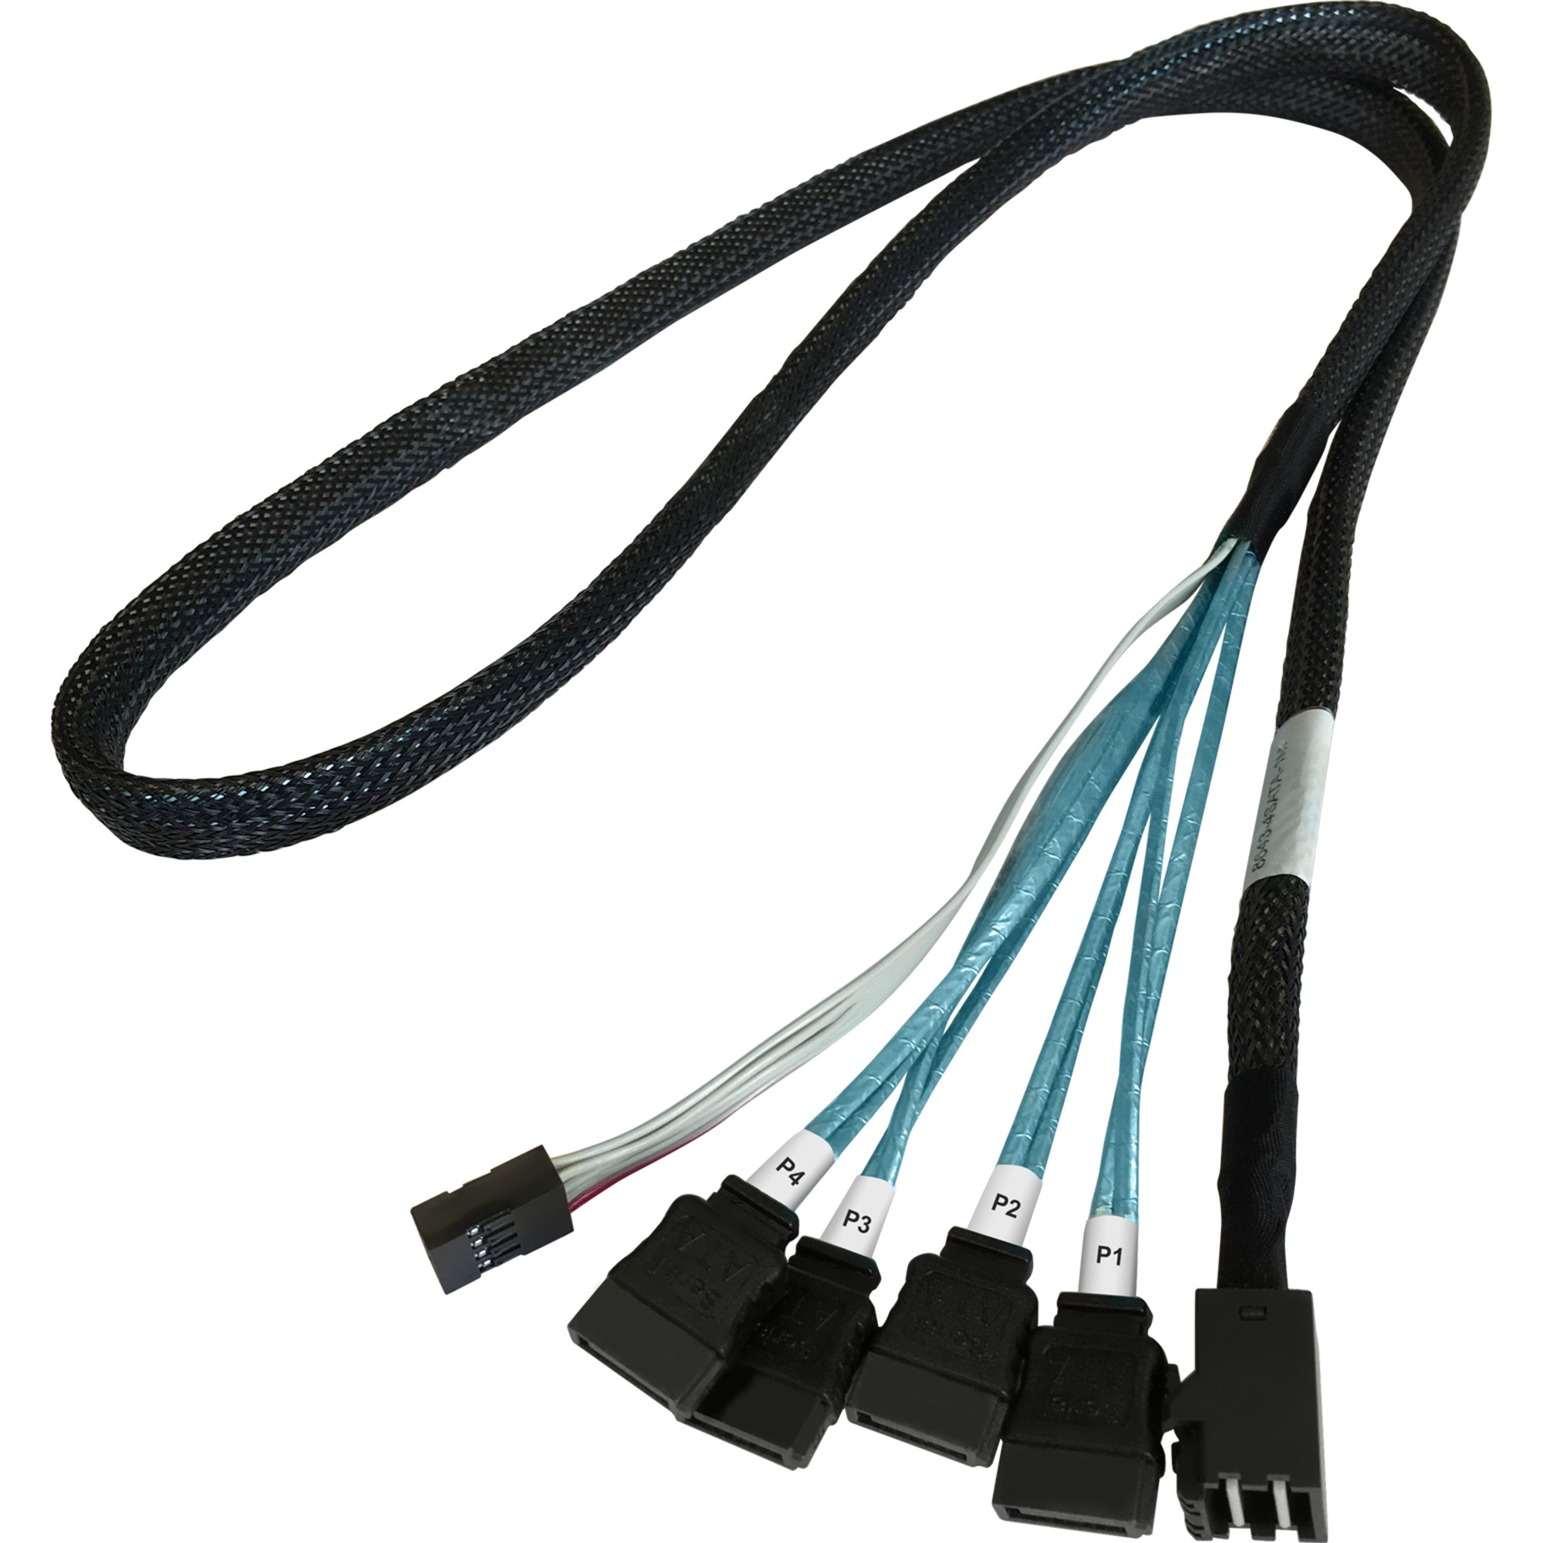 Image of Alternate - Adapterkabel 1x mSAS SFF-8643 > 4x SATA online einkaufen bei Alternate